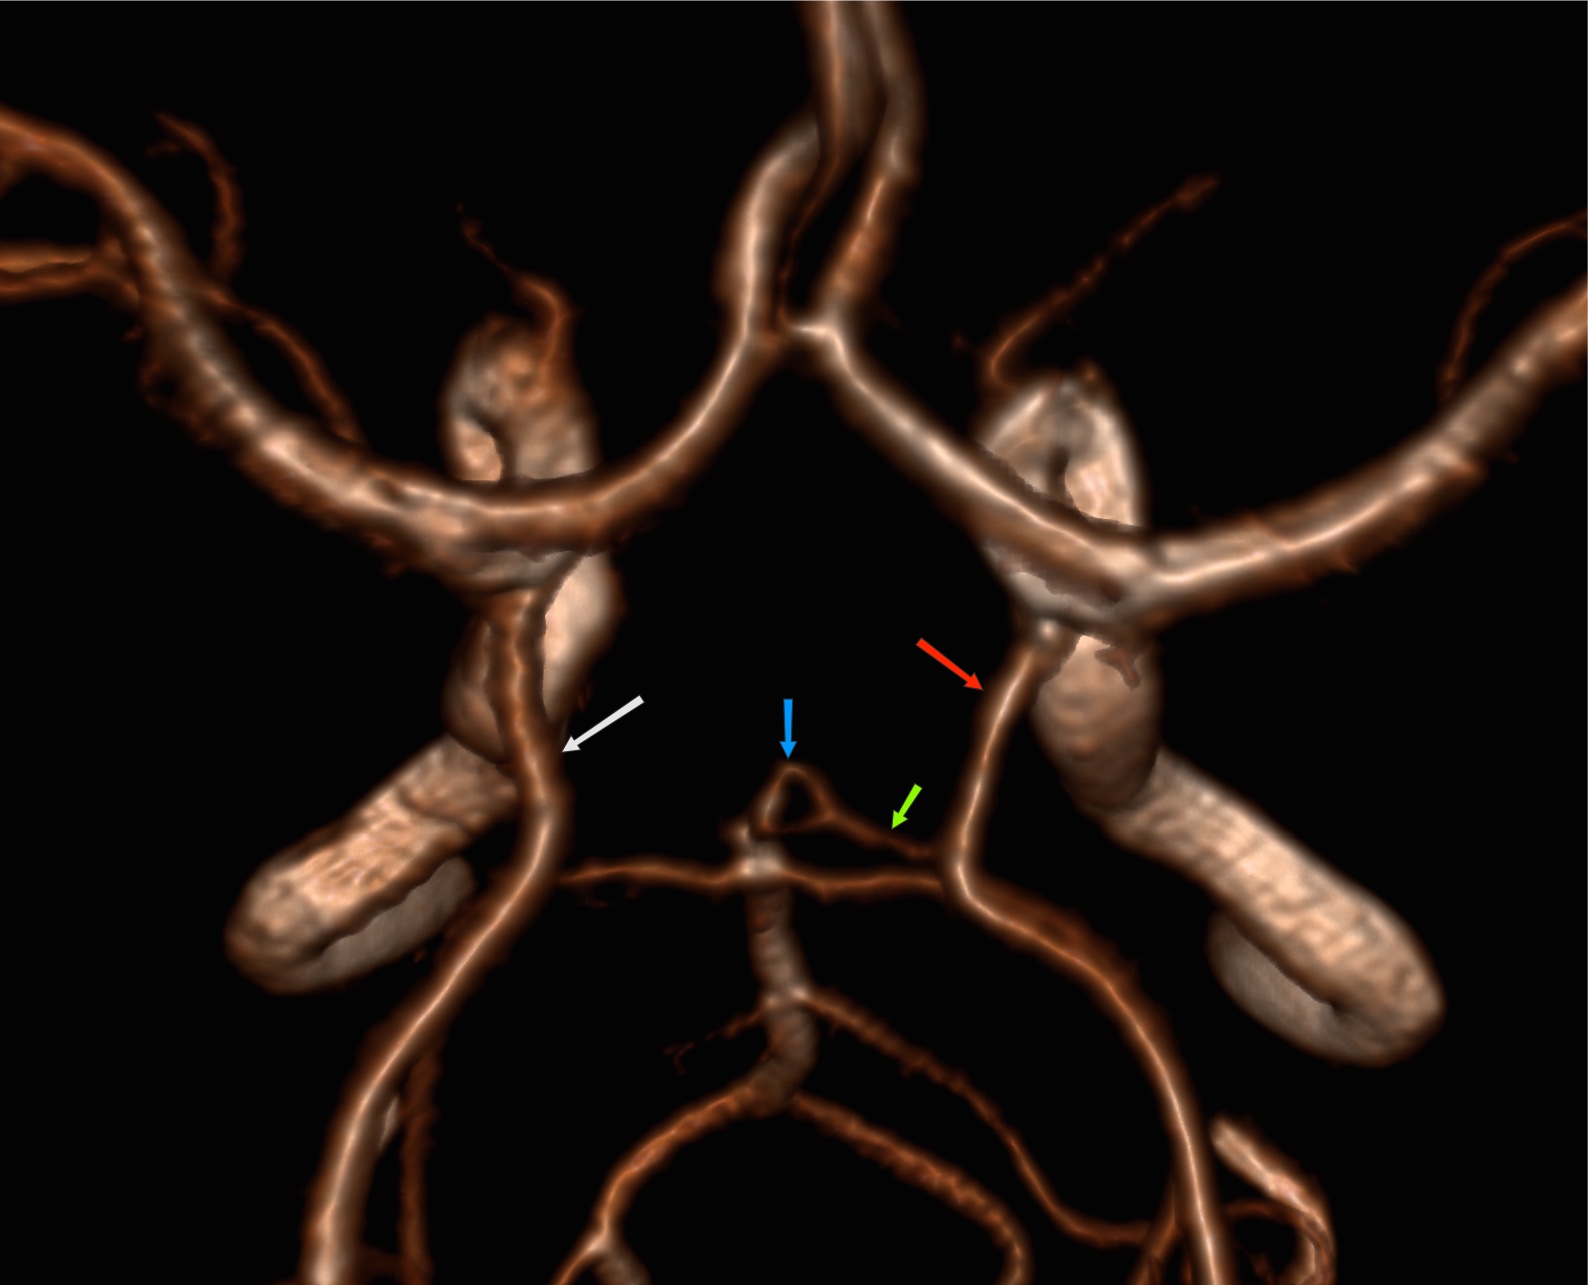 Развитие виллизиева круга в виде отсутствия кровотока. Гипоплазия правой позвоночной артерии сегменты. Гипоплазия р1 сегмента мозговой артерии. Гипоплазия правой передней передней мозговой артерии. Гипоплазия сегмента а1 правой ПМА.